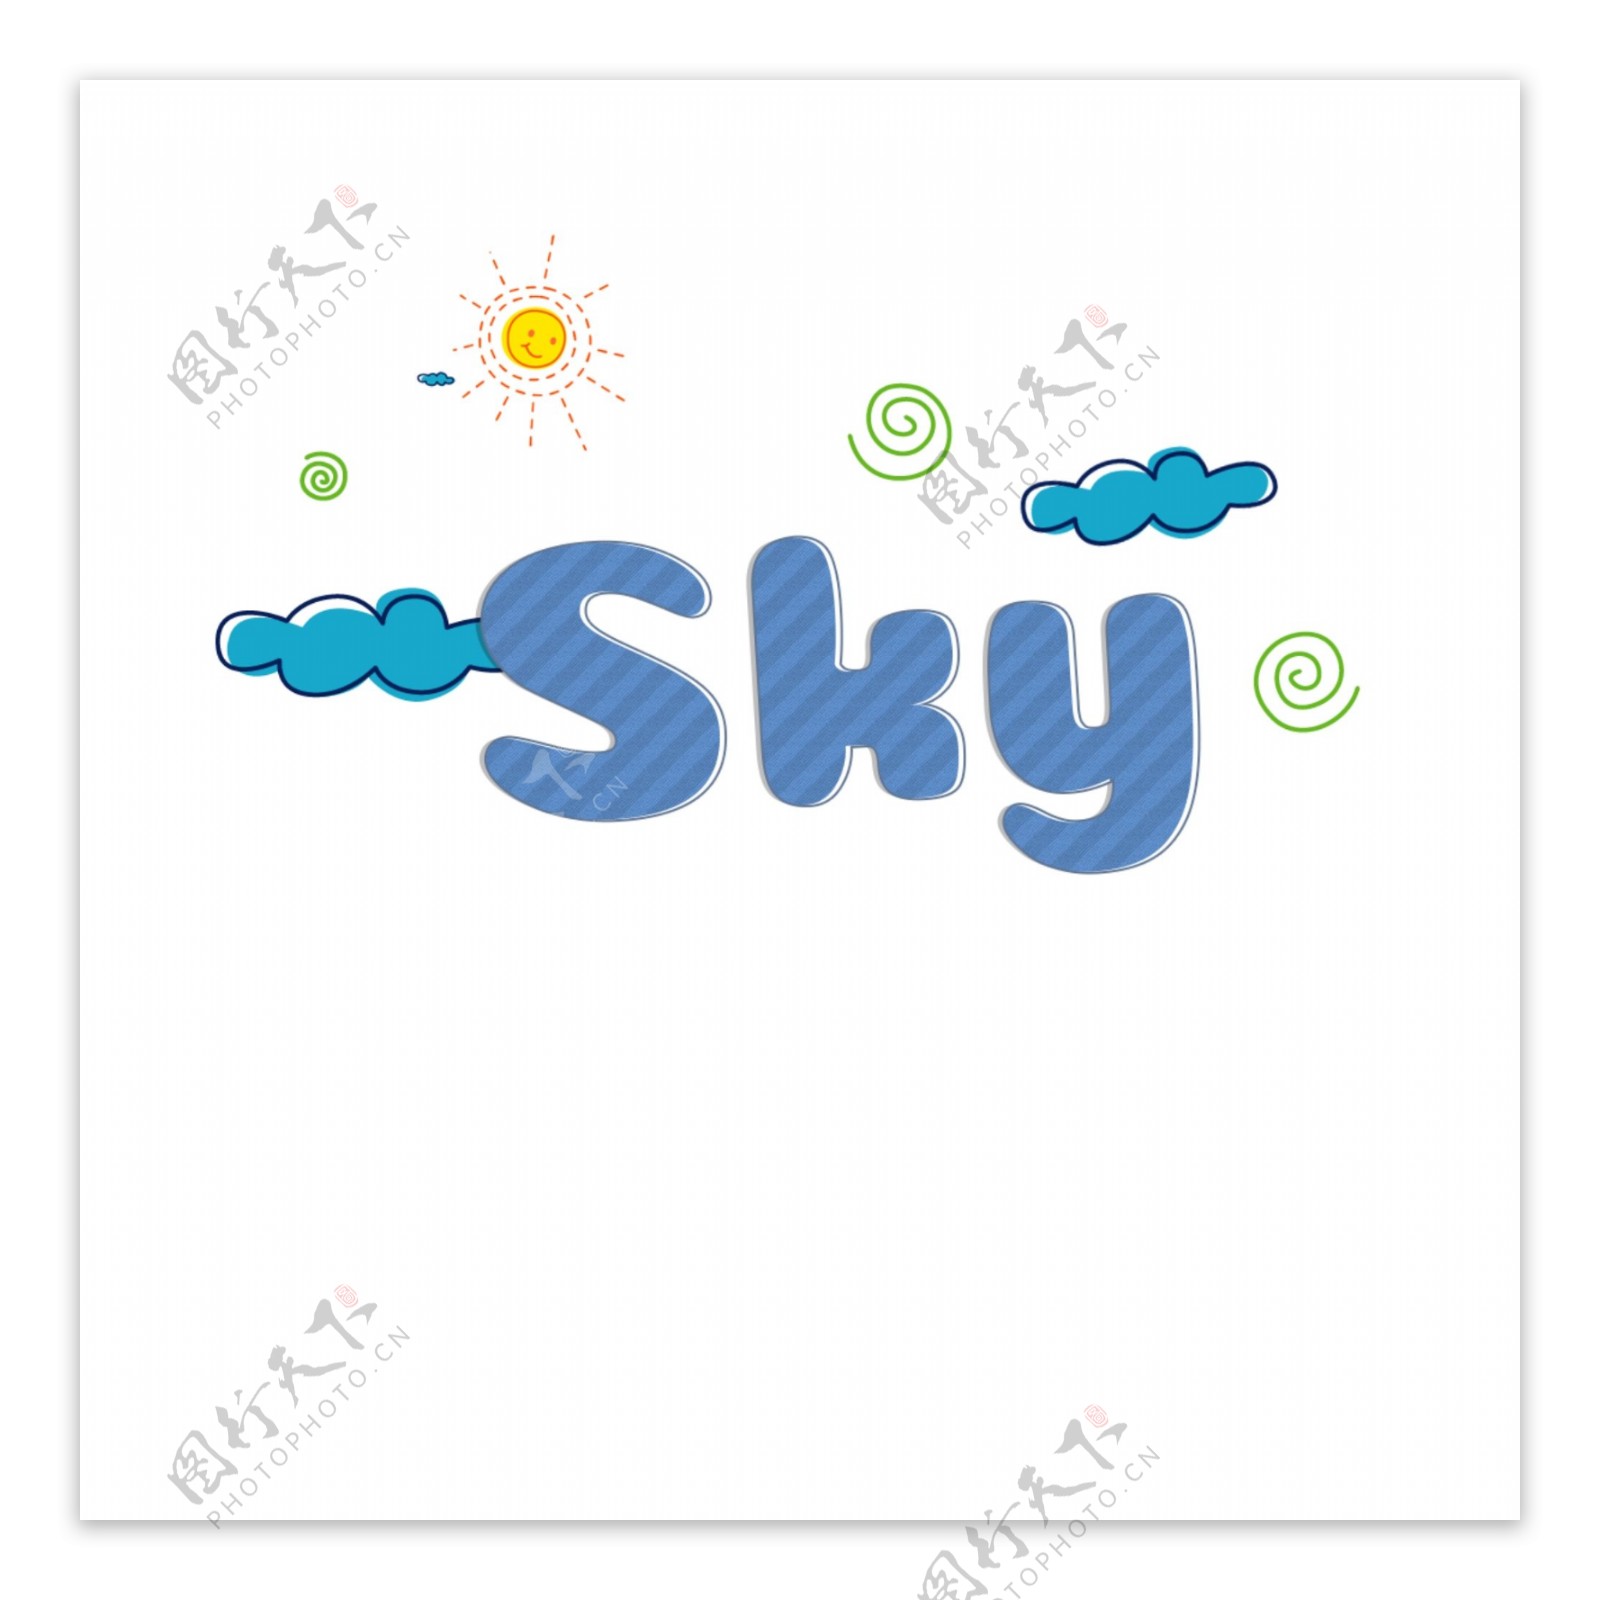 可爱的蓝色条纹天空简单字体与卡通图案